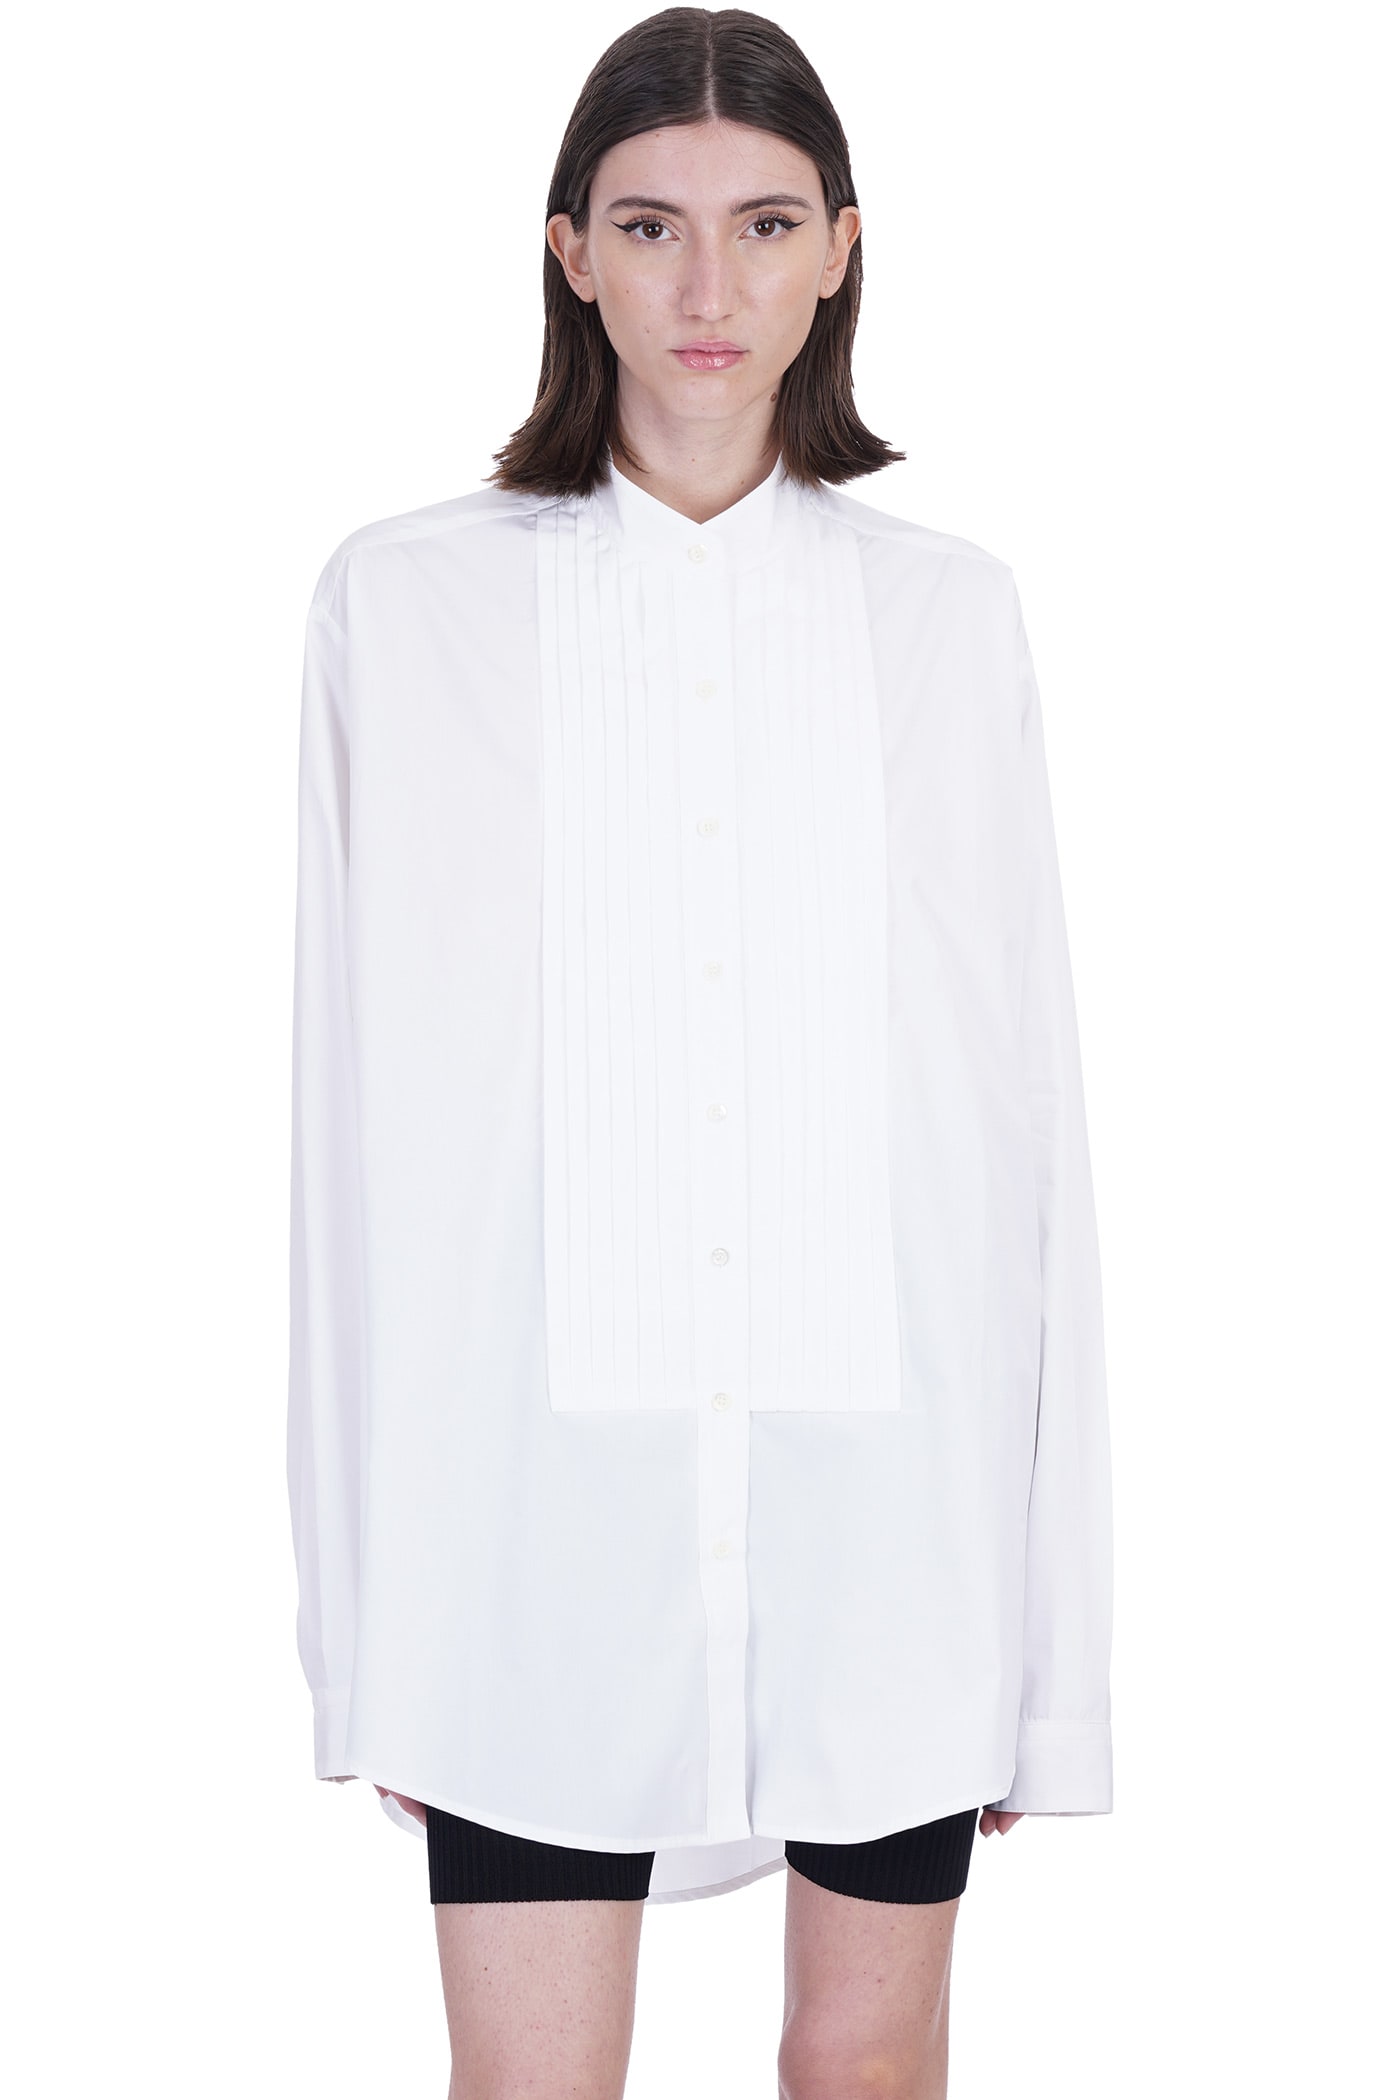 Laneus Dress In White Cotton